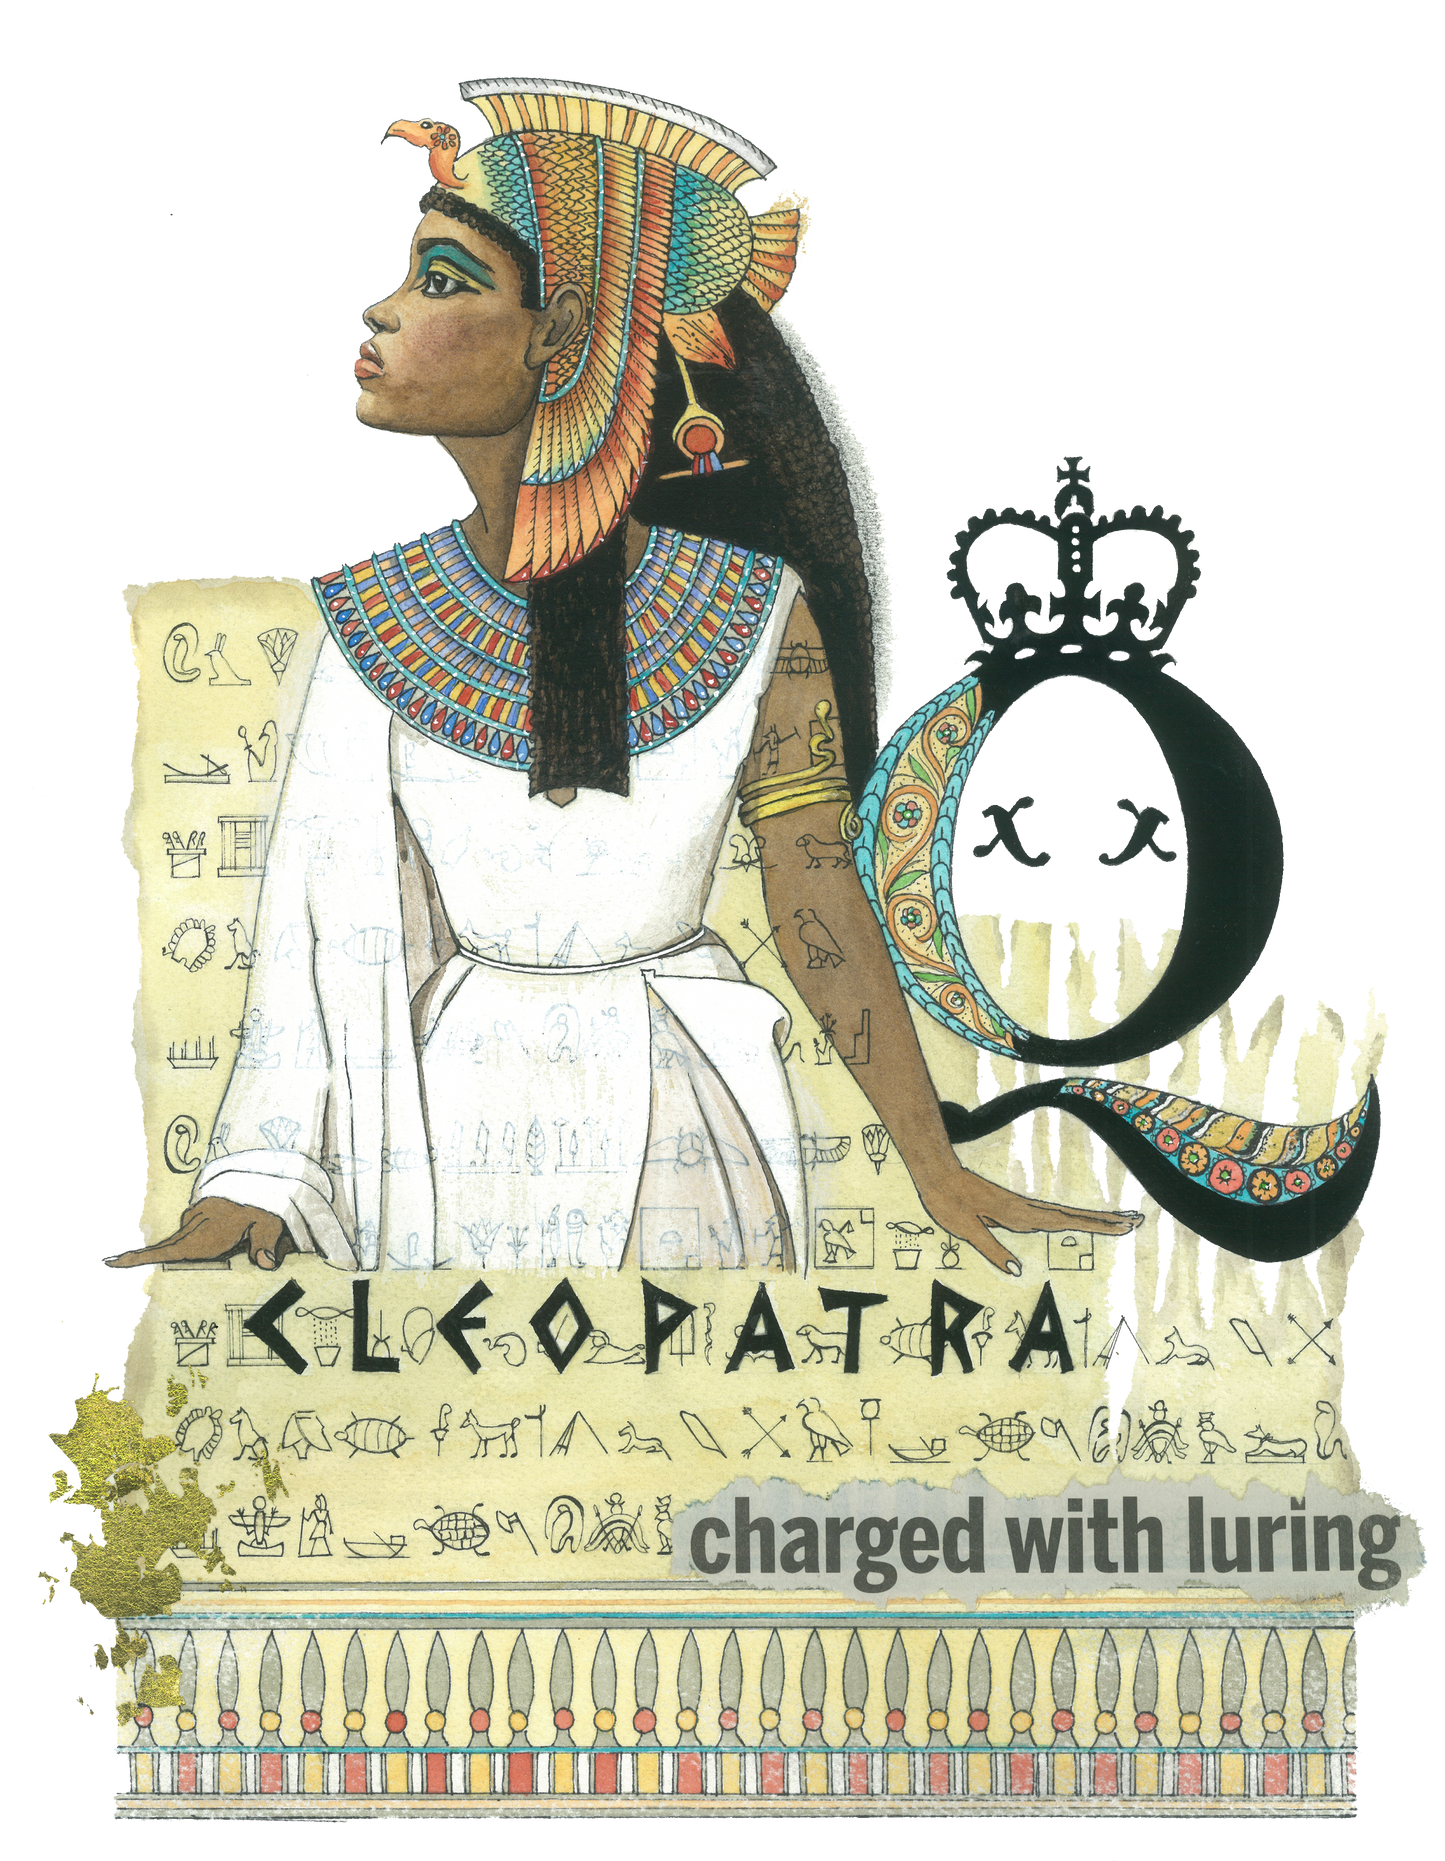 Cleopatra Unisex T-Shirt